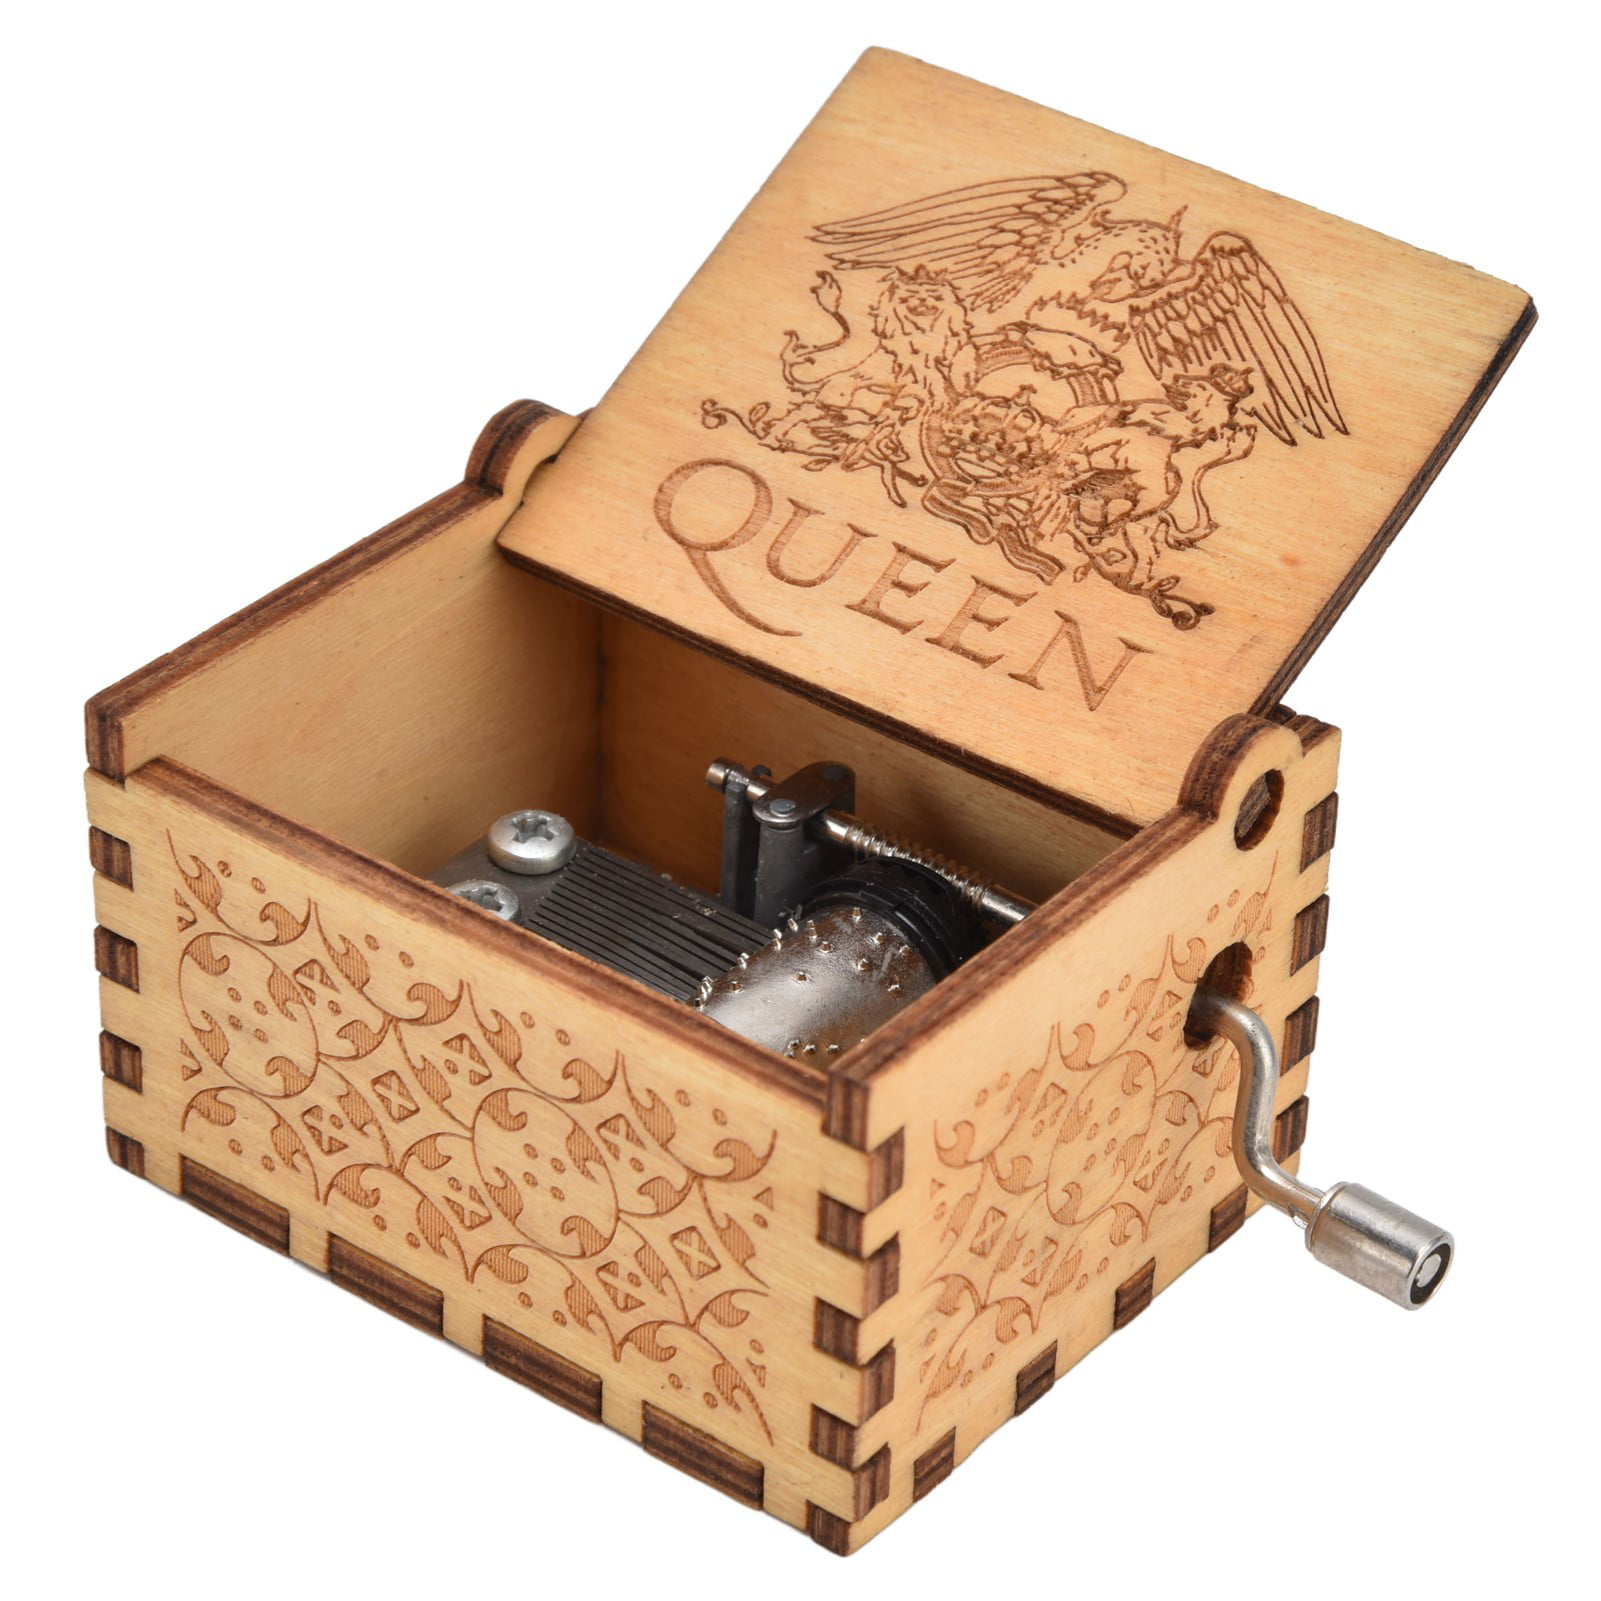 Hogwarts Vintage Wood Carved Music Box Xmas Birthday Gifts Toys Decor UK 